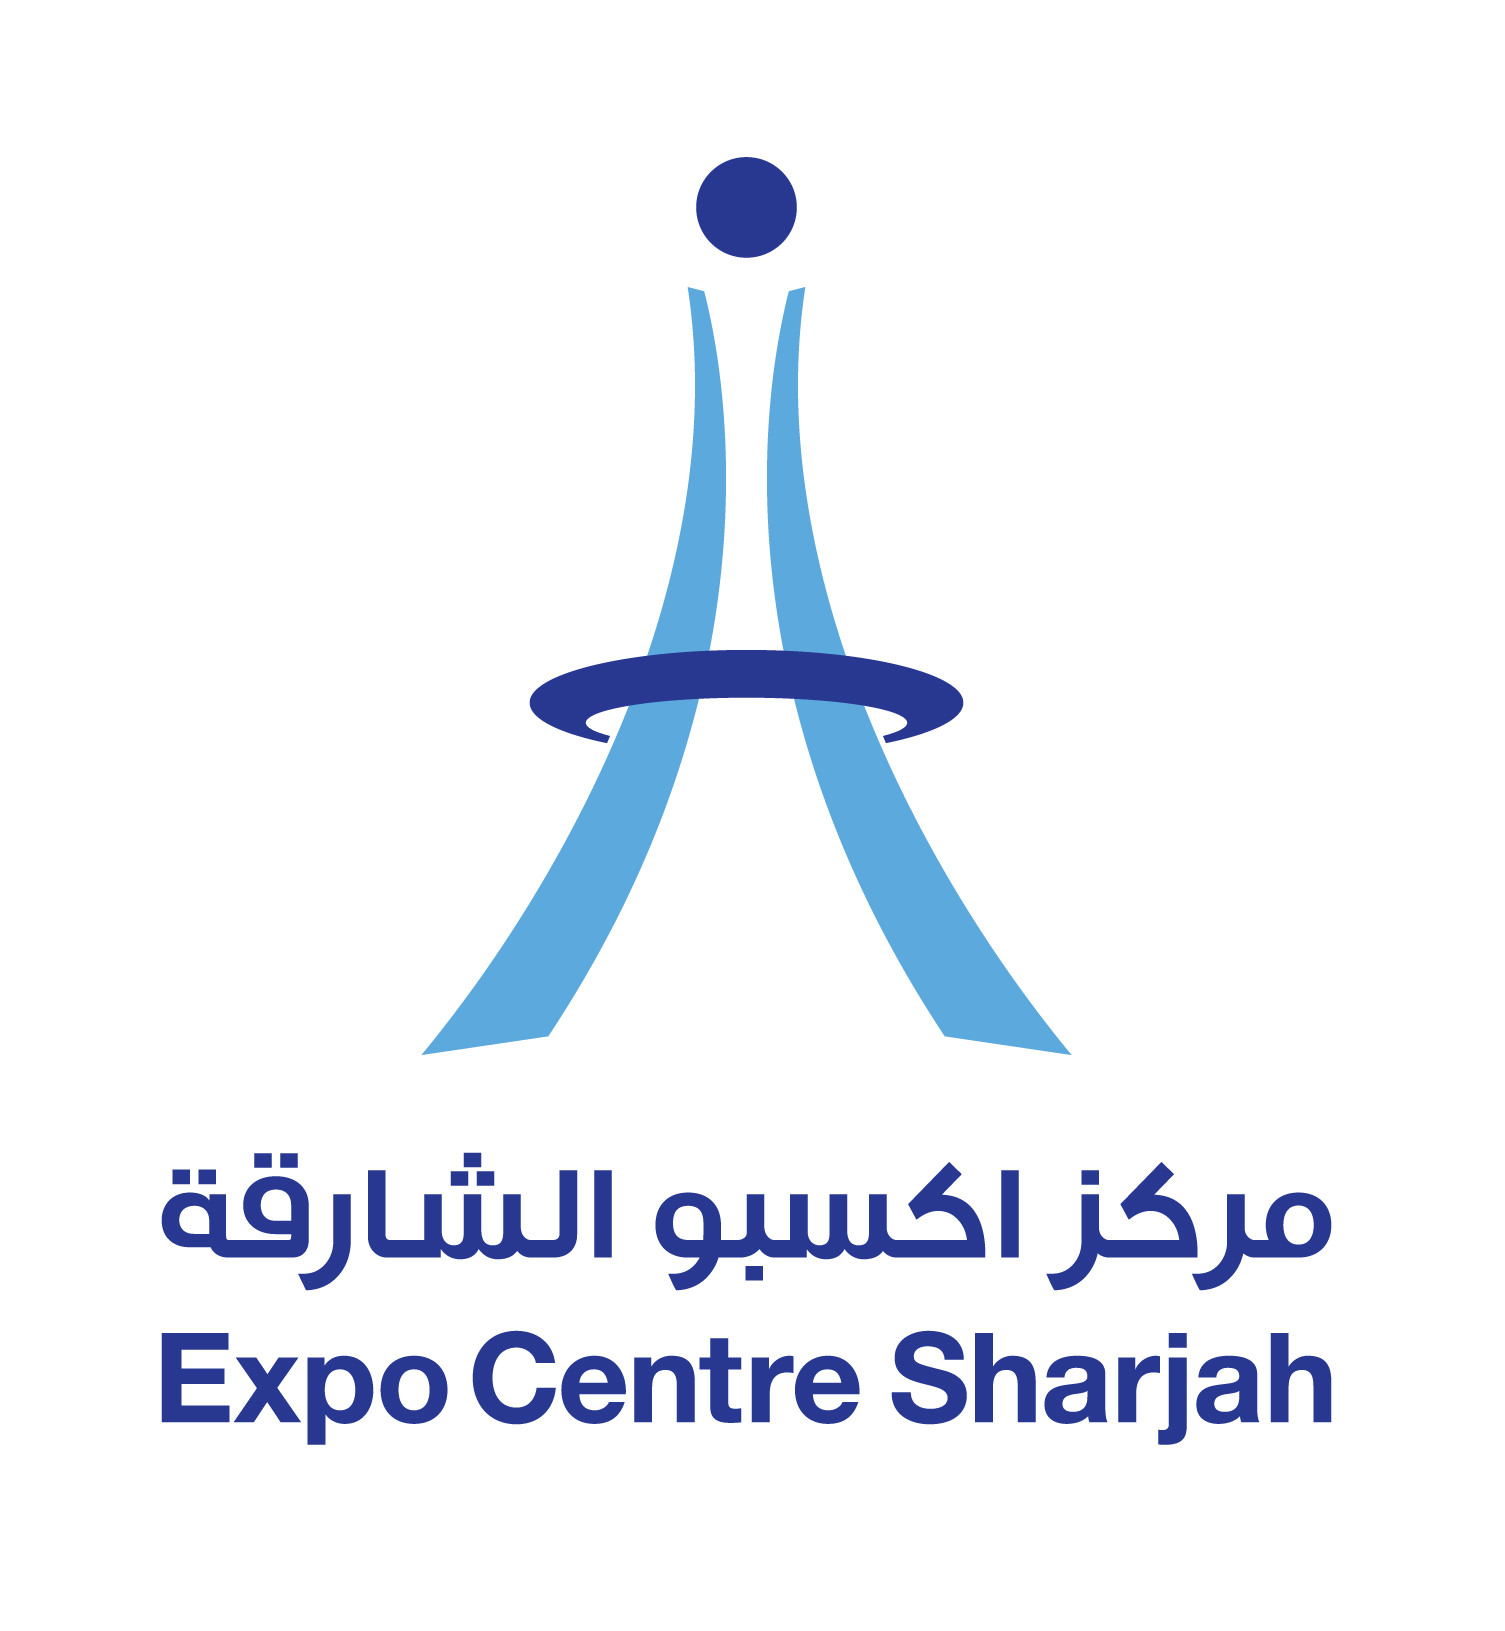 Expo Centre Sharjah_Brandmark_White BG.jpg